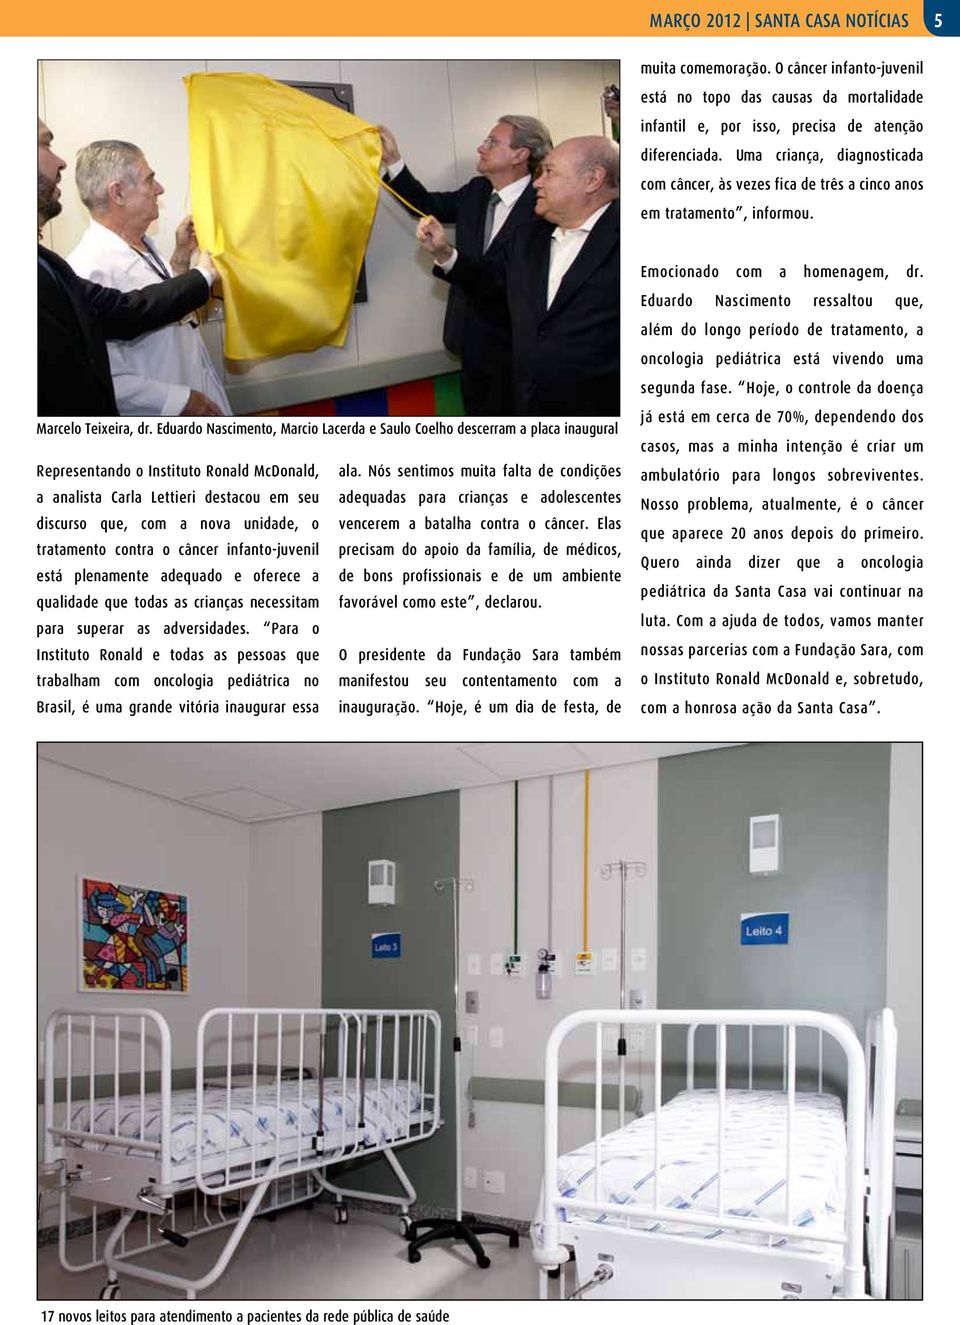 Eduardo Nascimento, Marcio Lacerda e Saulo Coelho descerram a placa inaugural Representando o Instituto Ronald McDonald, ala.